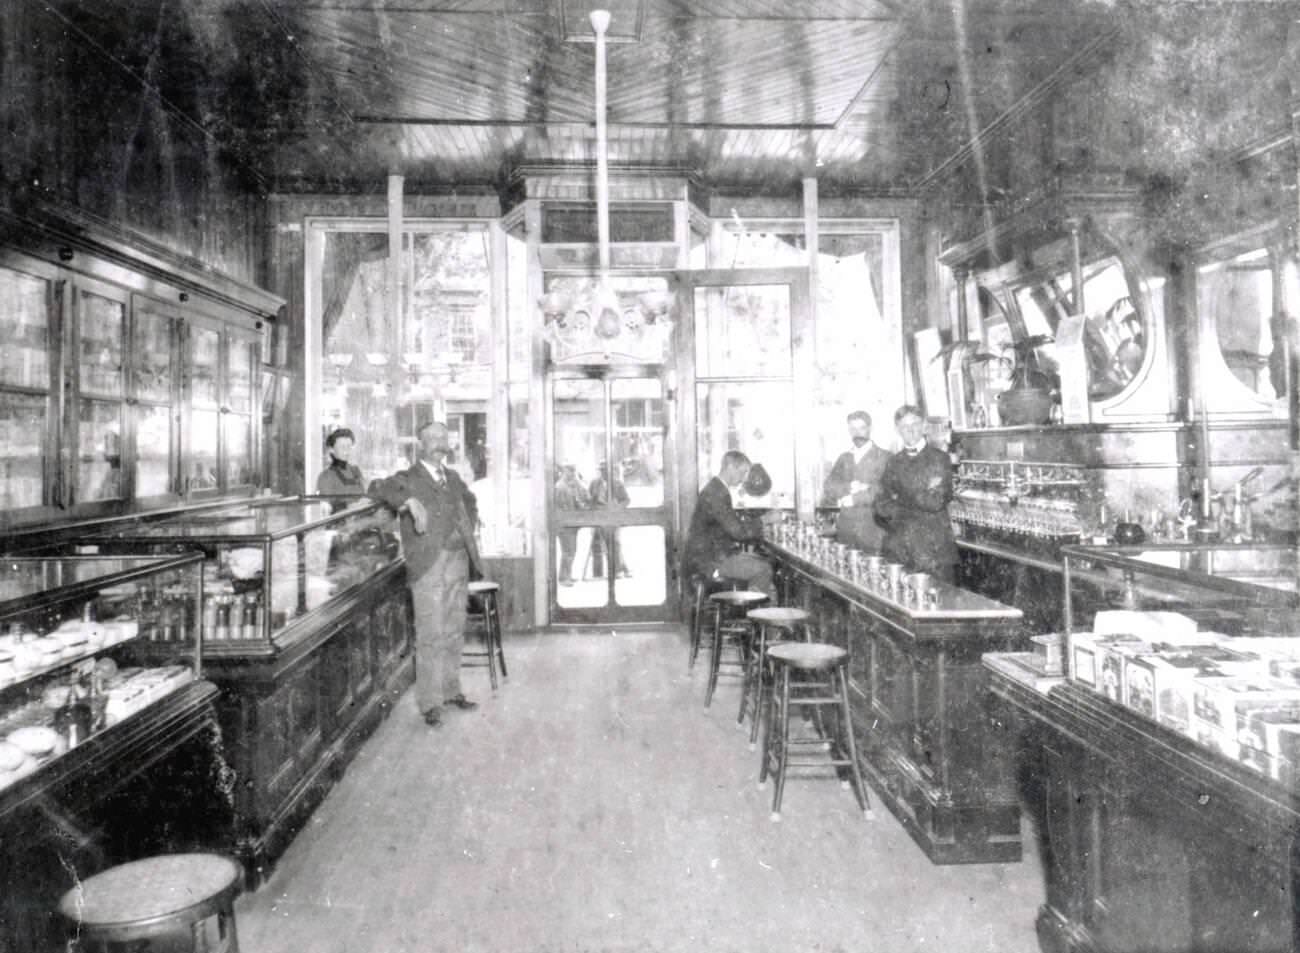 Congdon'S Pharmacy, Brooklyn, 1910S.